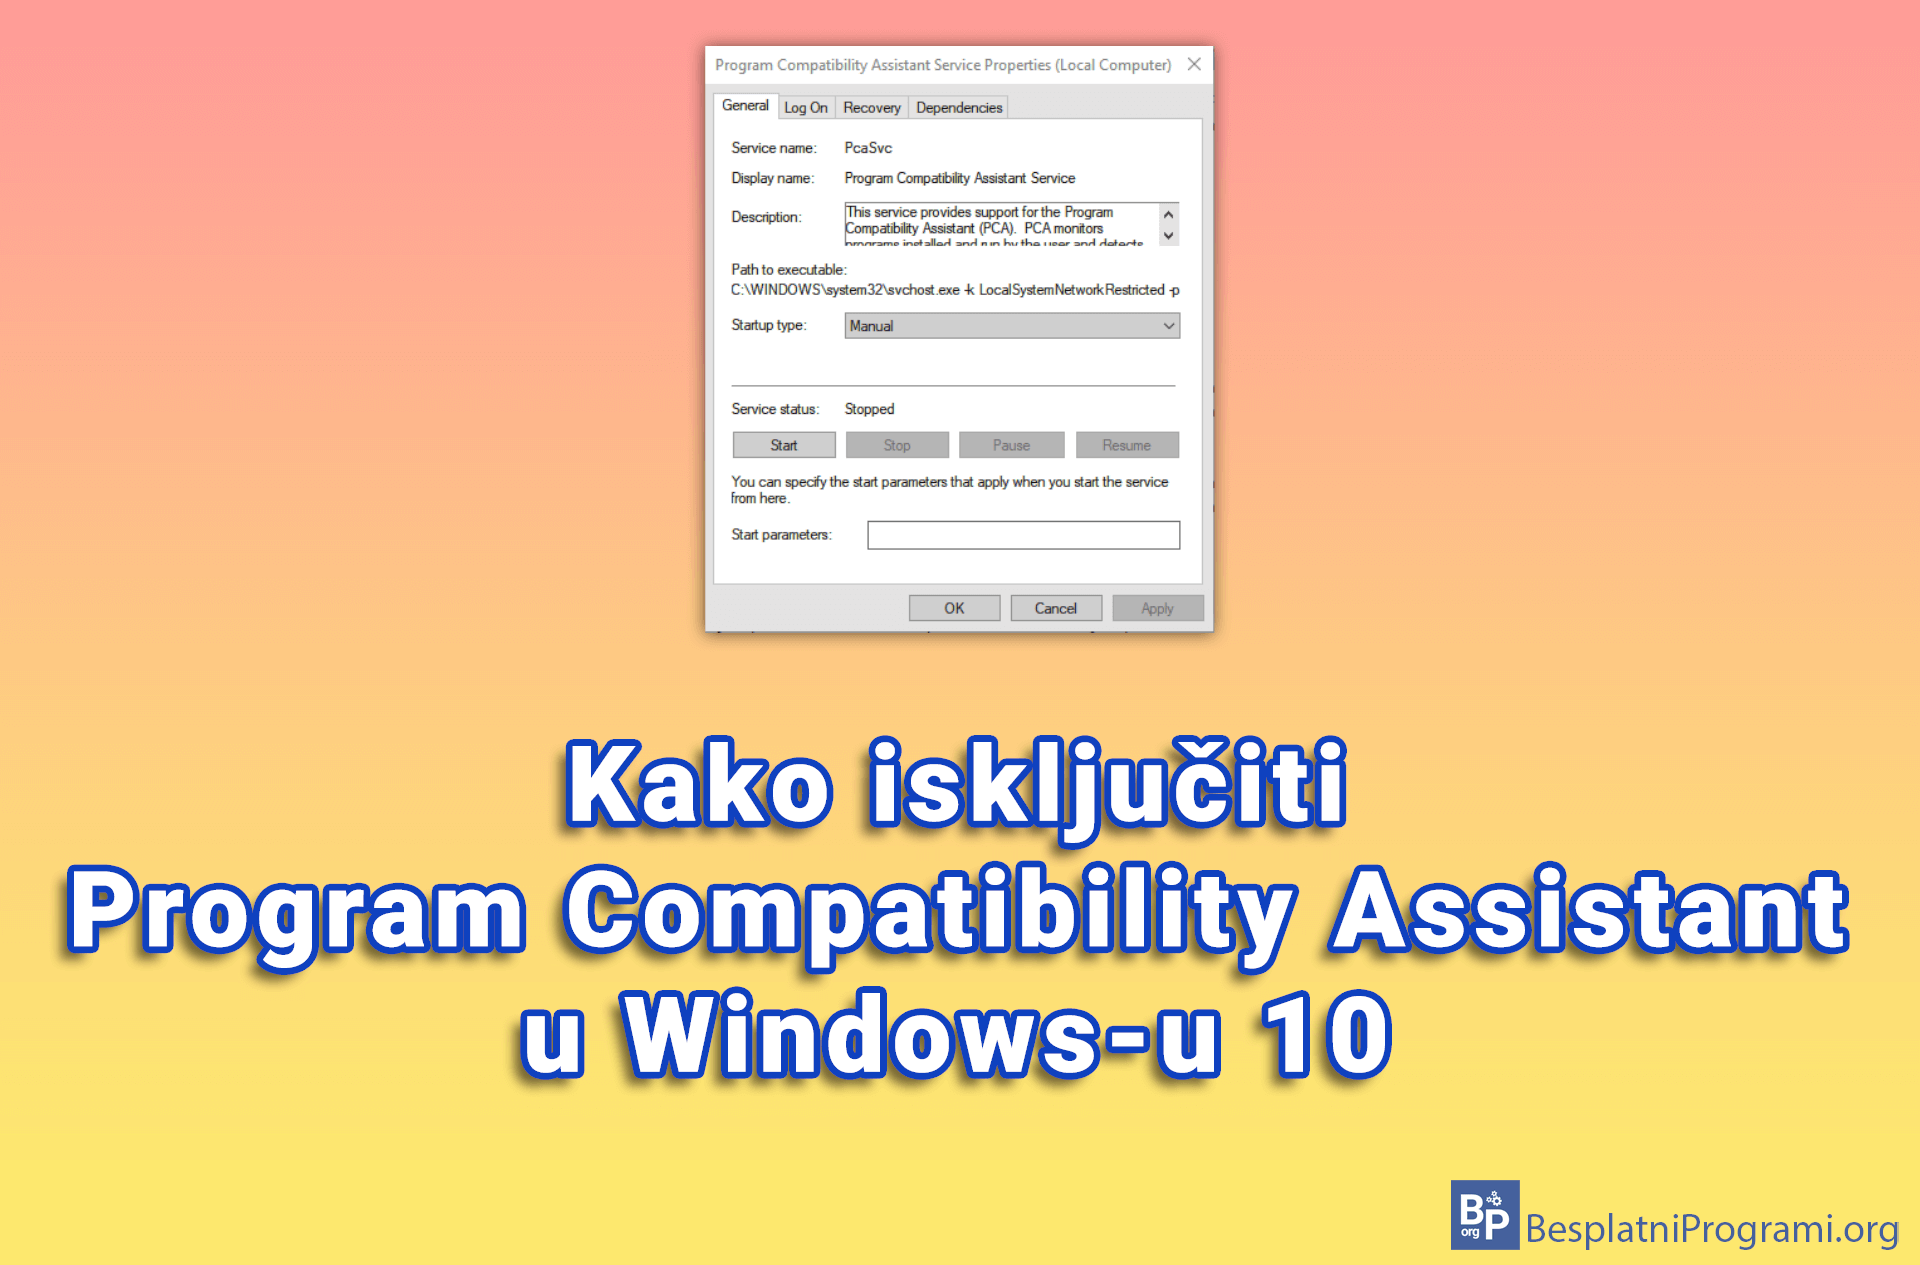 Kako isključiti Program Compatibility Assistant u Windows-u 10